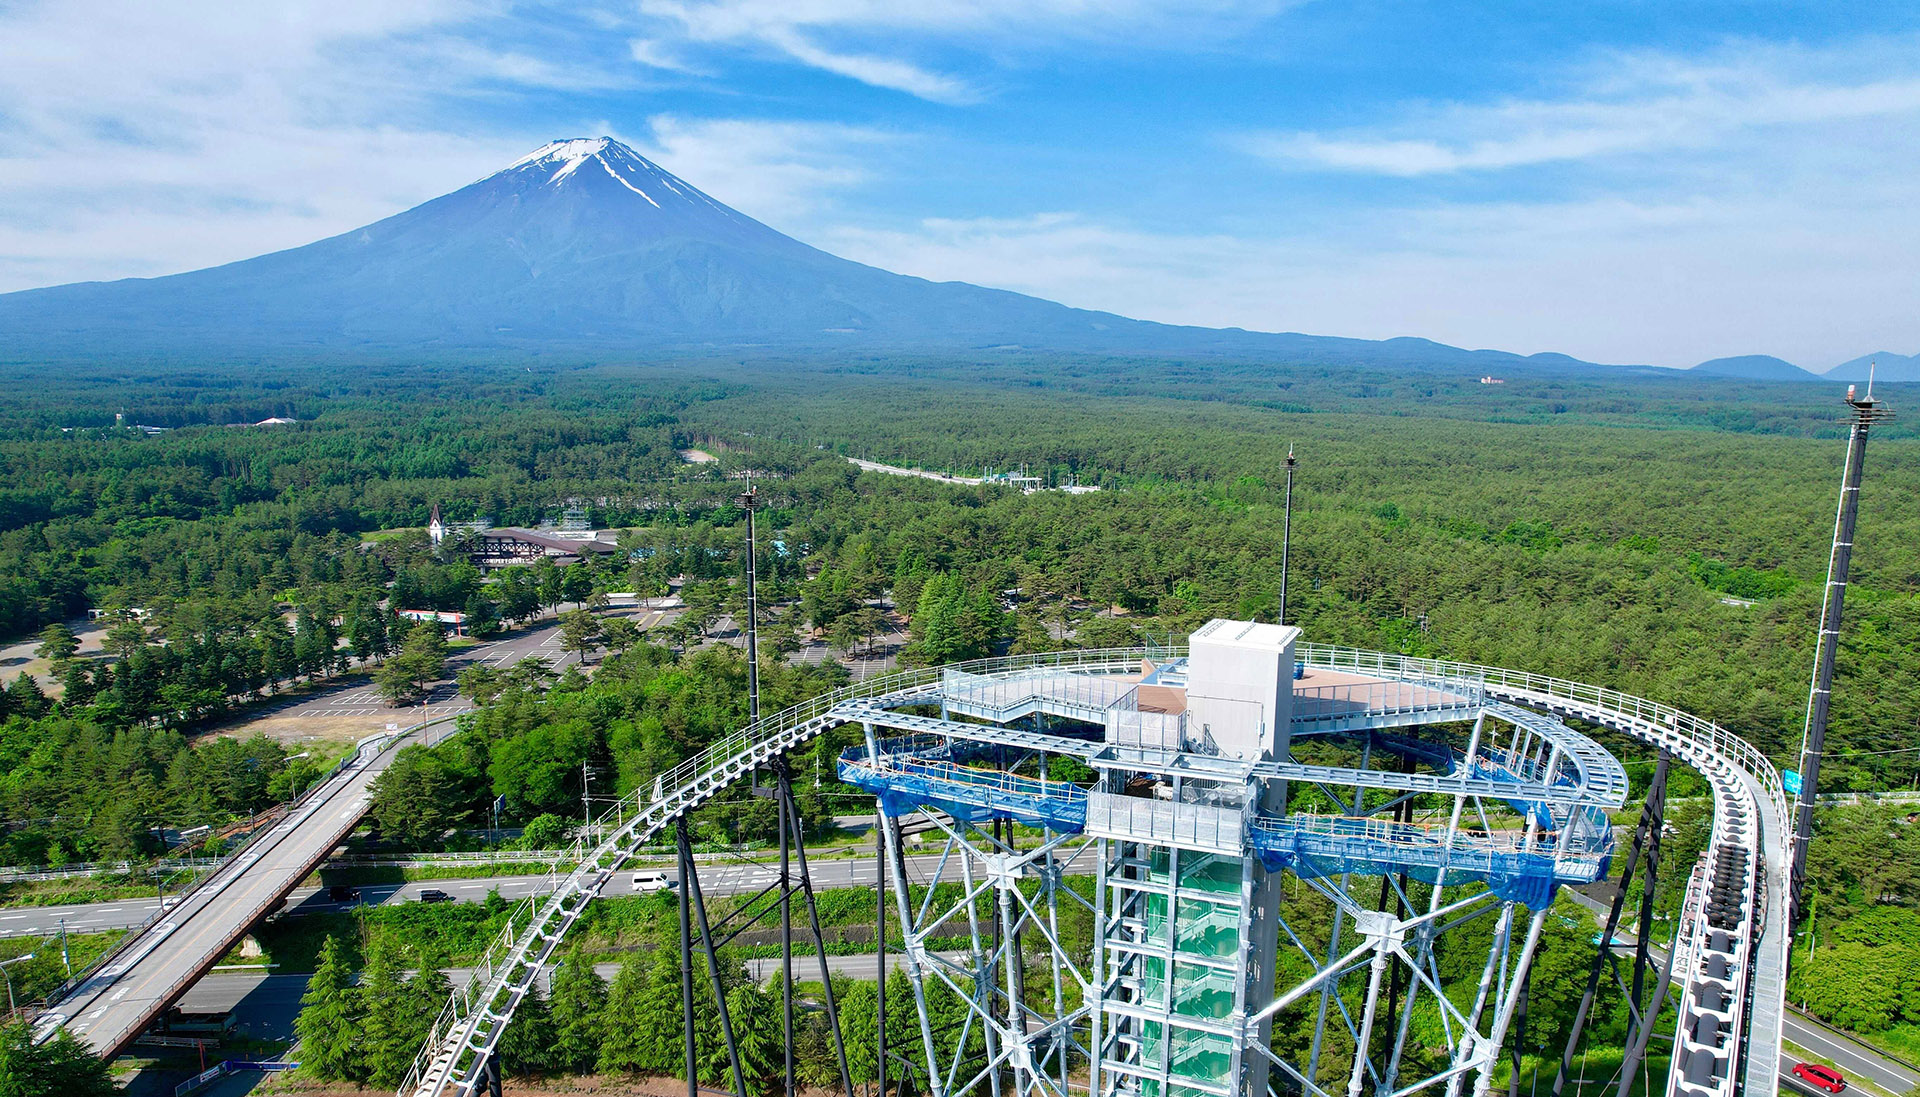 富士急ハイランド、富士山一望の絶景展望台「FUJIYAMAタワー」7月21日